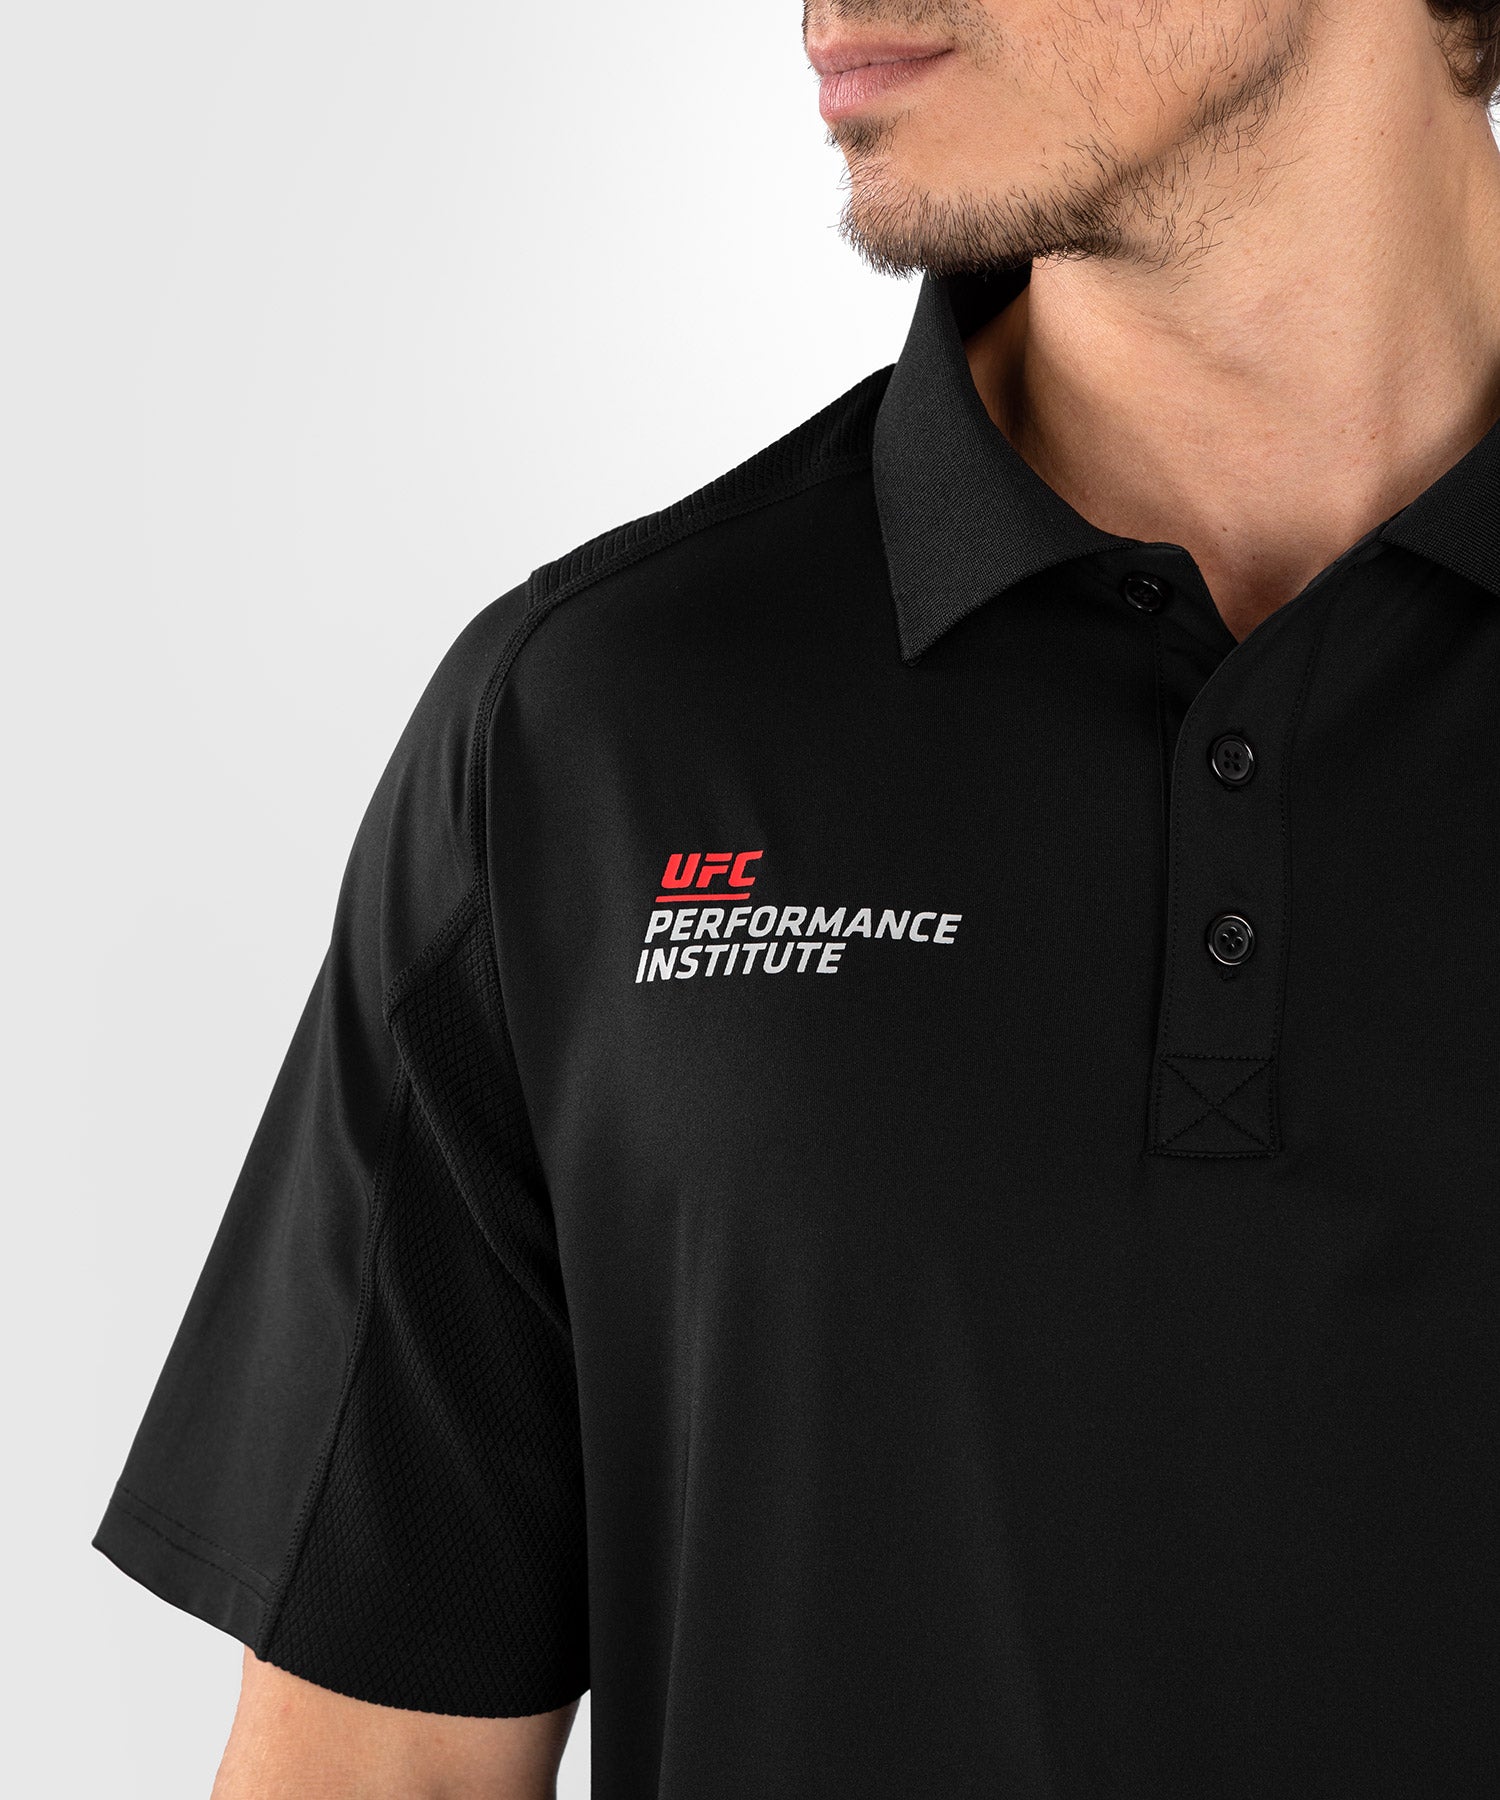 UFC Venum Performance Institute 2.0 Men’s T-Shirt - Grey